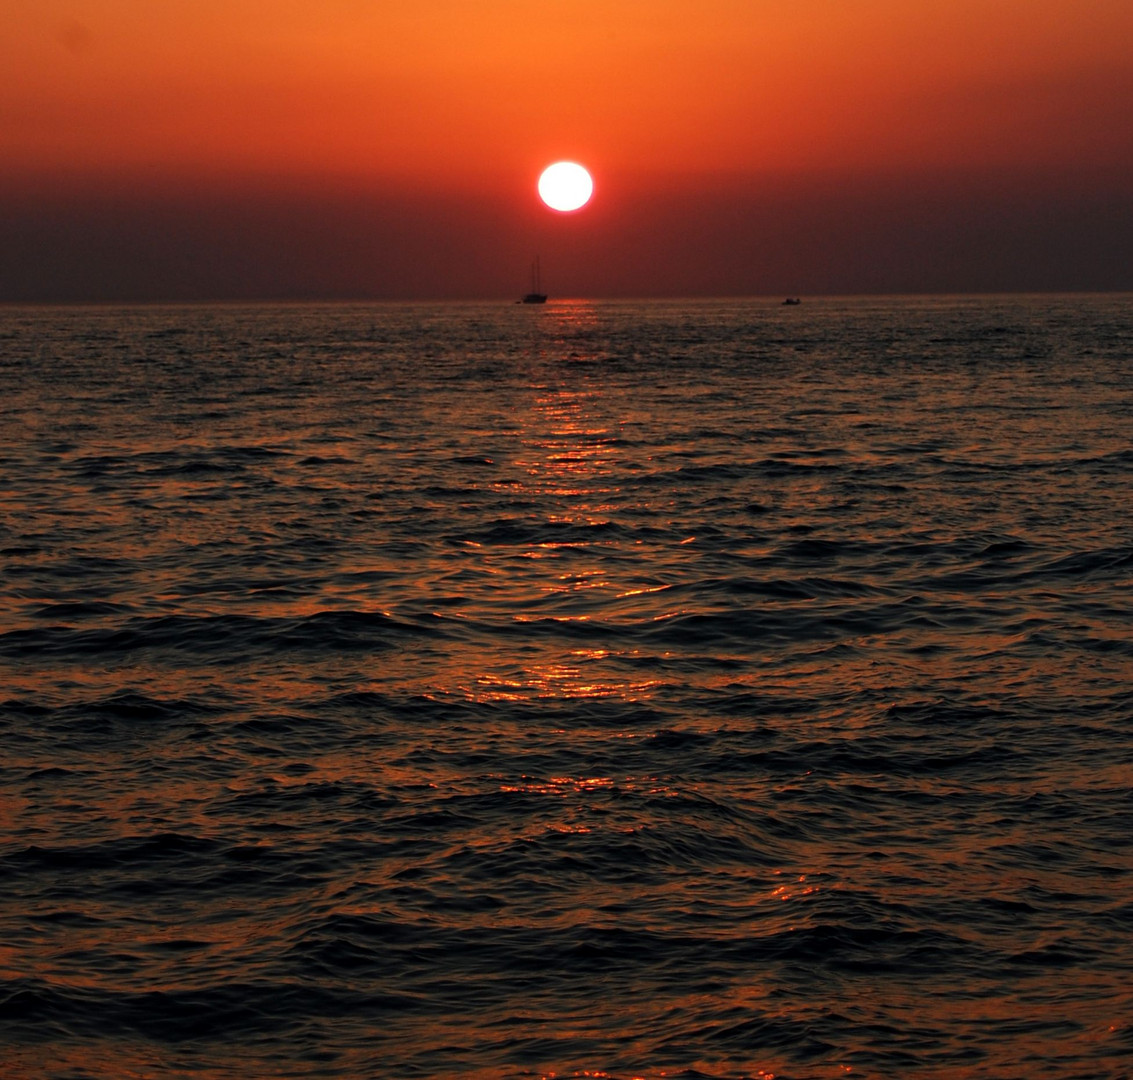 Sonnenuntergang in Zadar